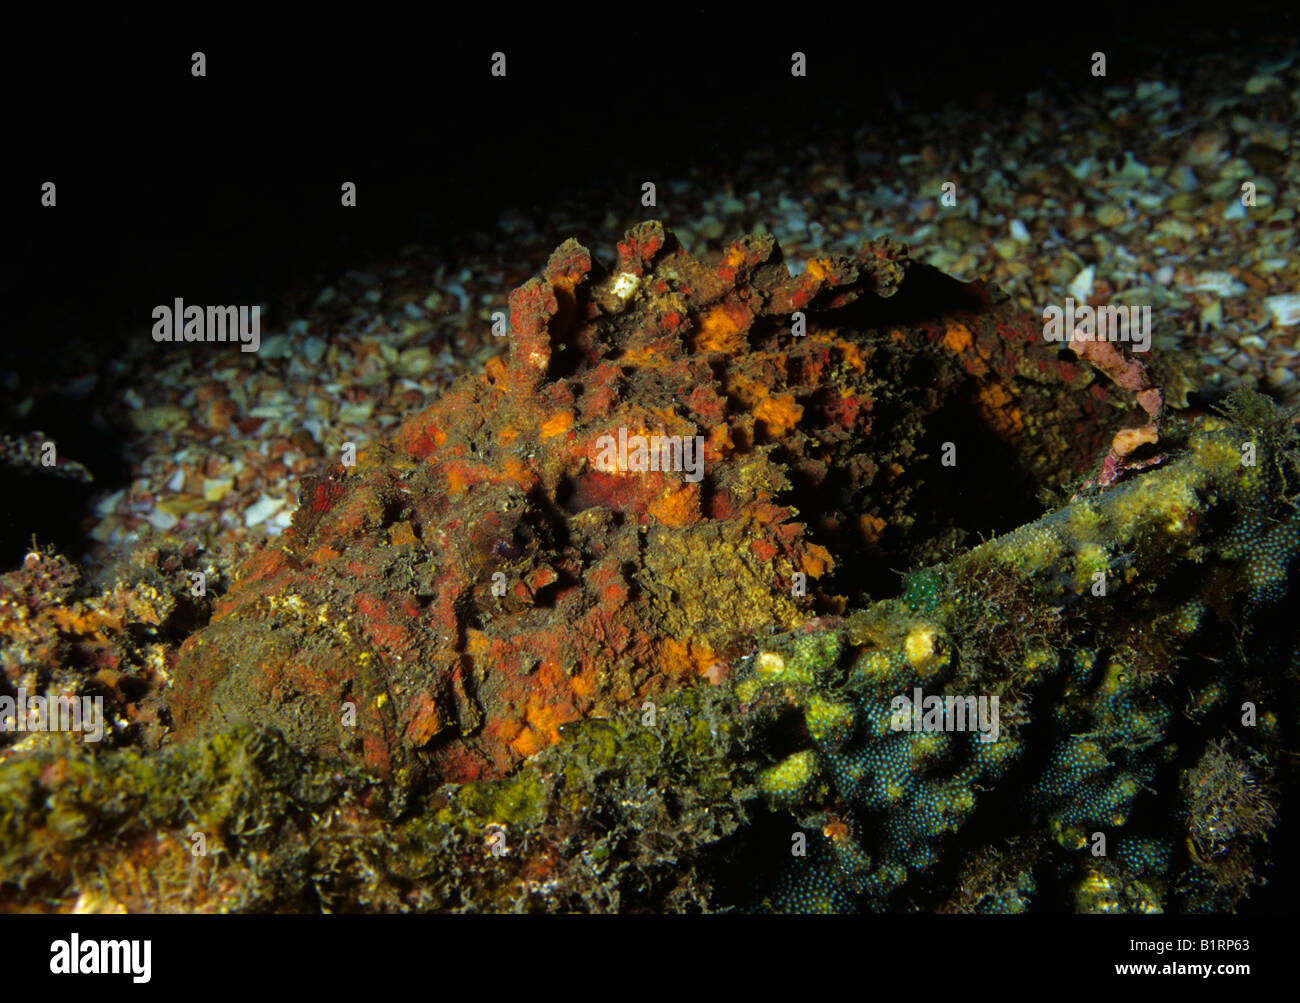 Vero o pesci pietra corallina pesci pietra (Synanceia verrucosa) mimetizzata contro una barriera corallina in attesa di preda di Musandam, Oman, Arabi Foto Stock